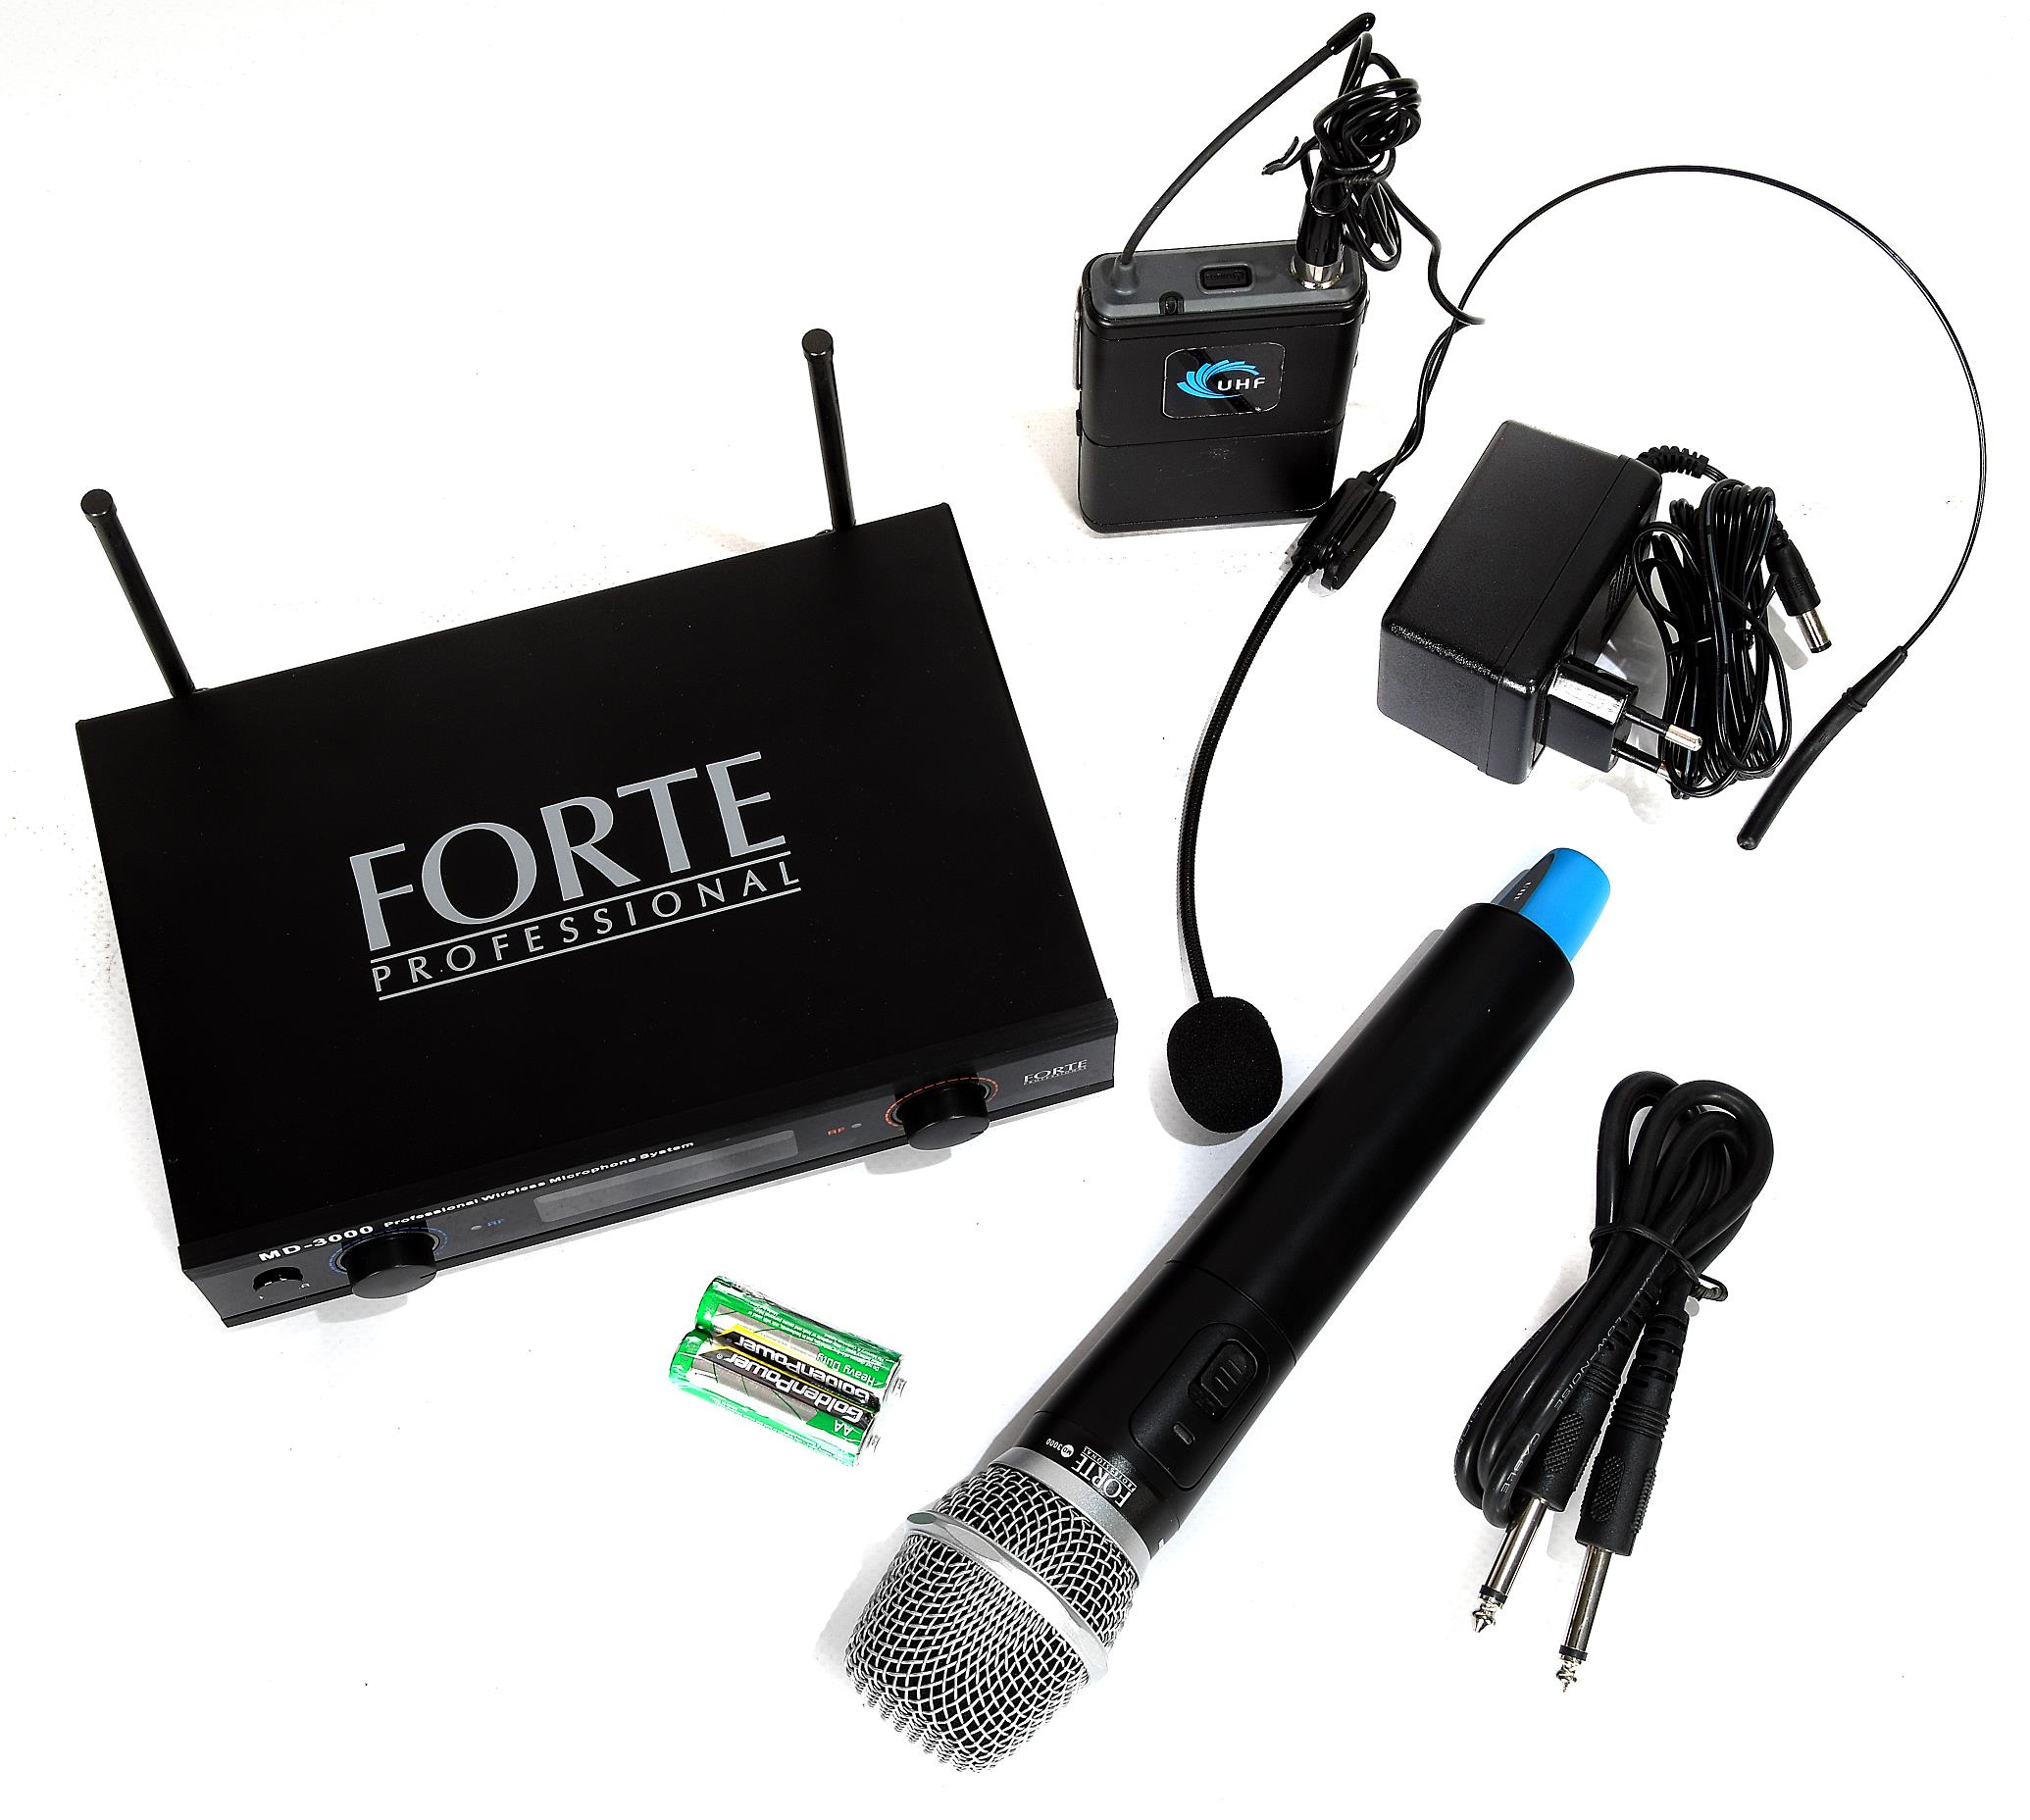 Детальная картинка товара Forte MD-3000 HH+HS Combo в магазине Музыкальная Тема